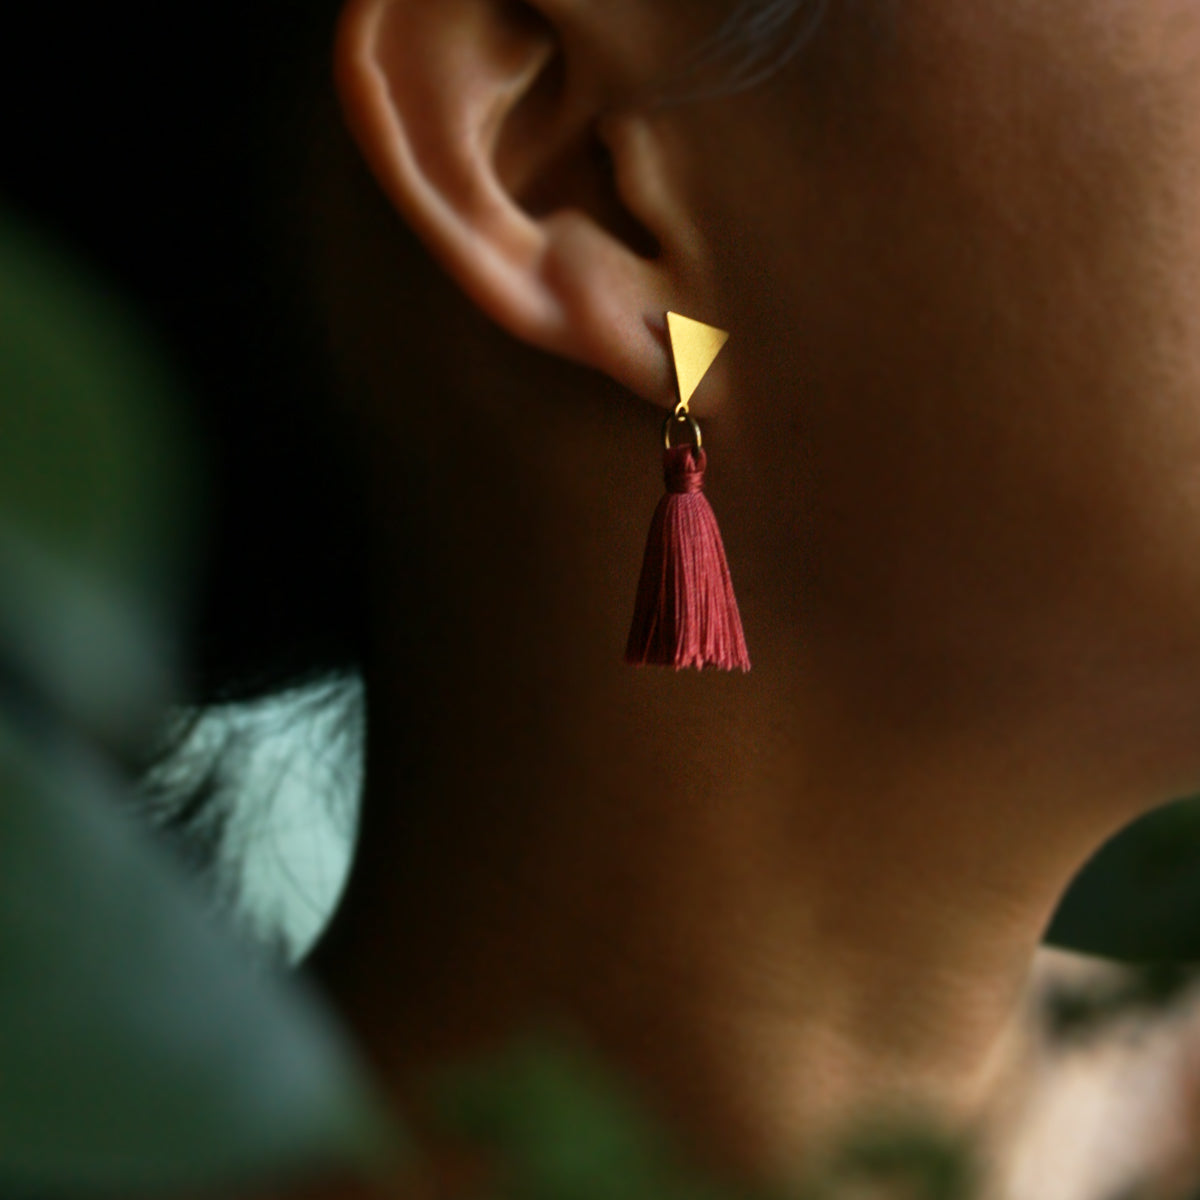 The Vibrant Berlin Stud Earrings _ Triangle stud with merlot red silk Tassel earrings on ears